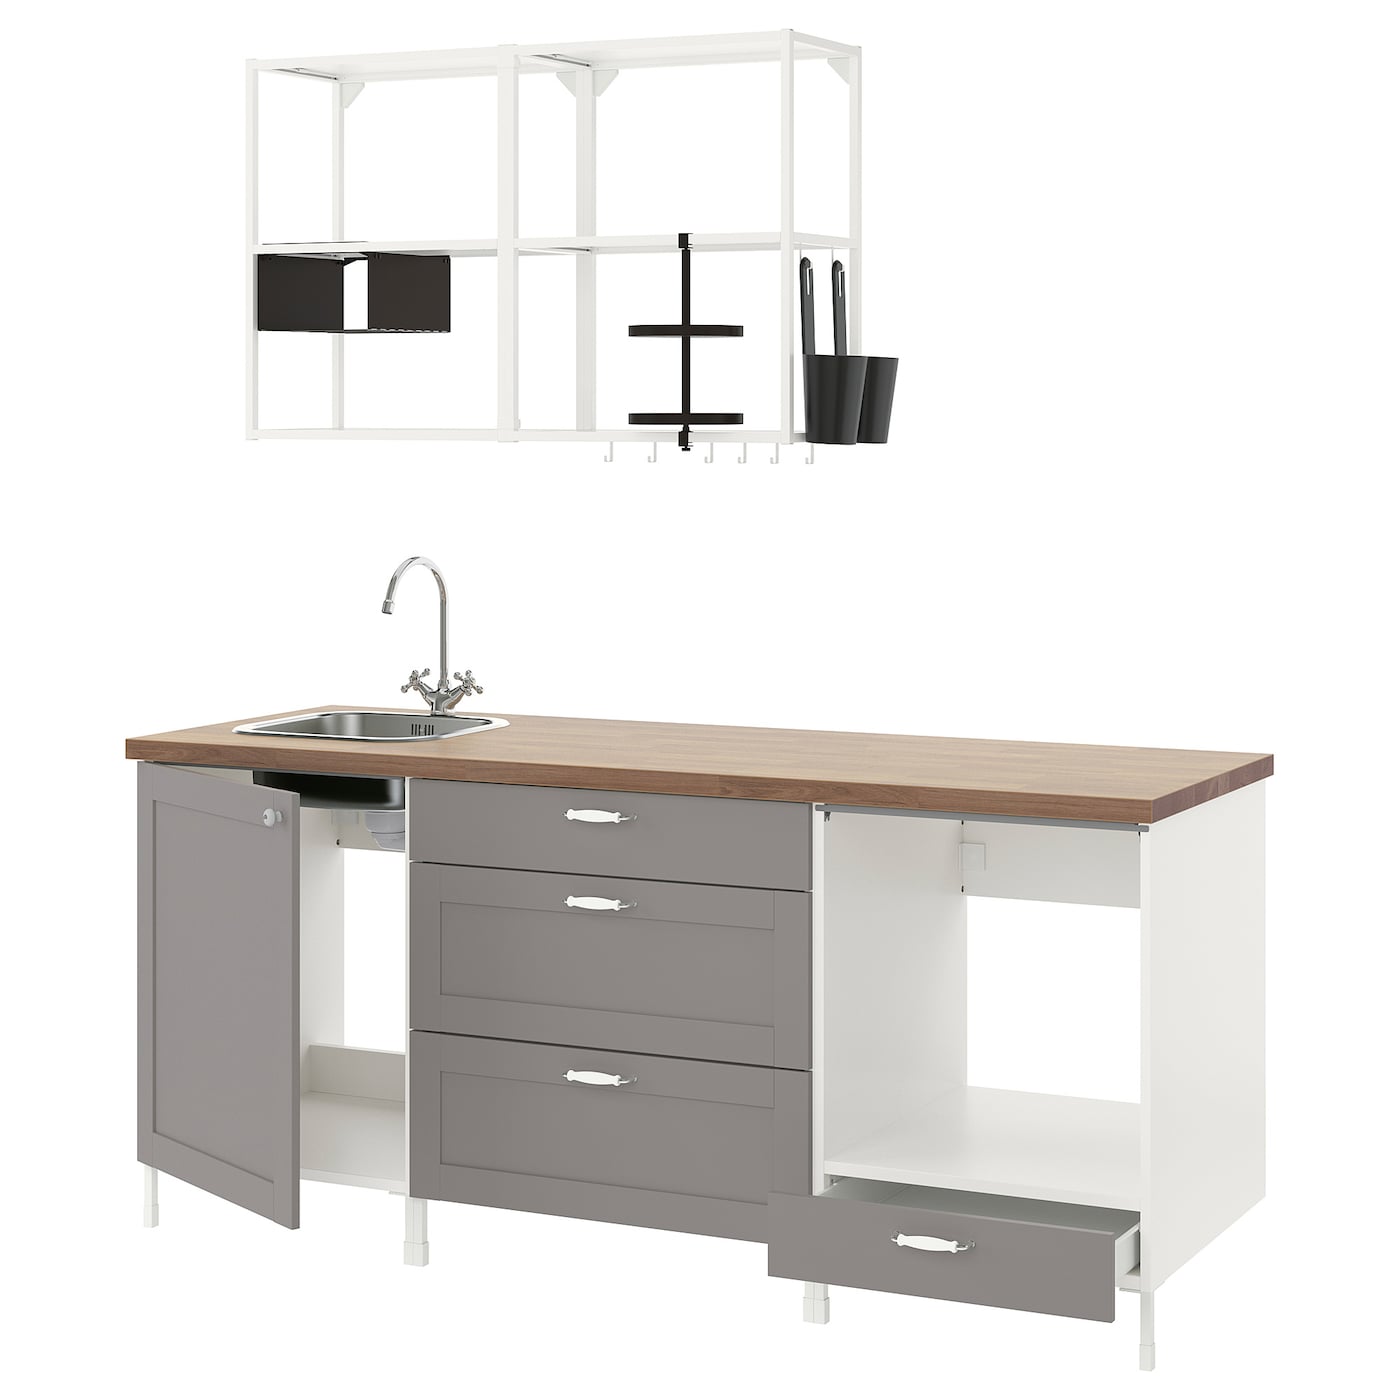 Кухня - ENHET  IKEA/ ЭНХЕТ ИКЕА, 203х222 см, белый/серый/бежевый